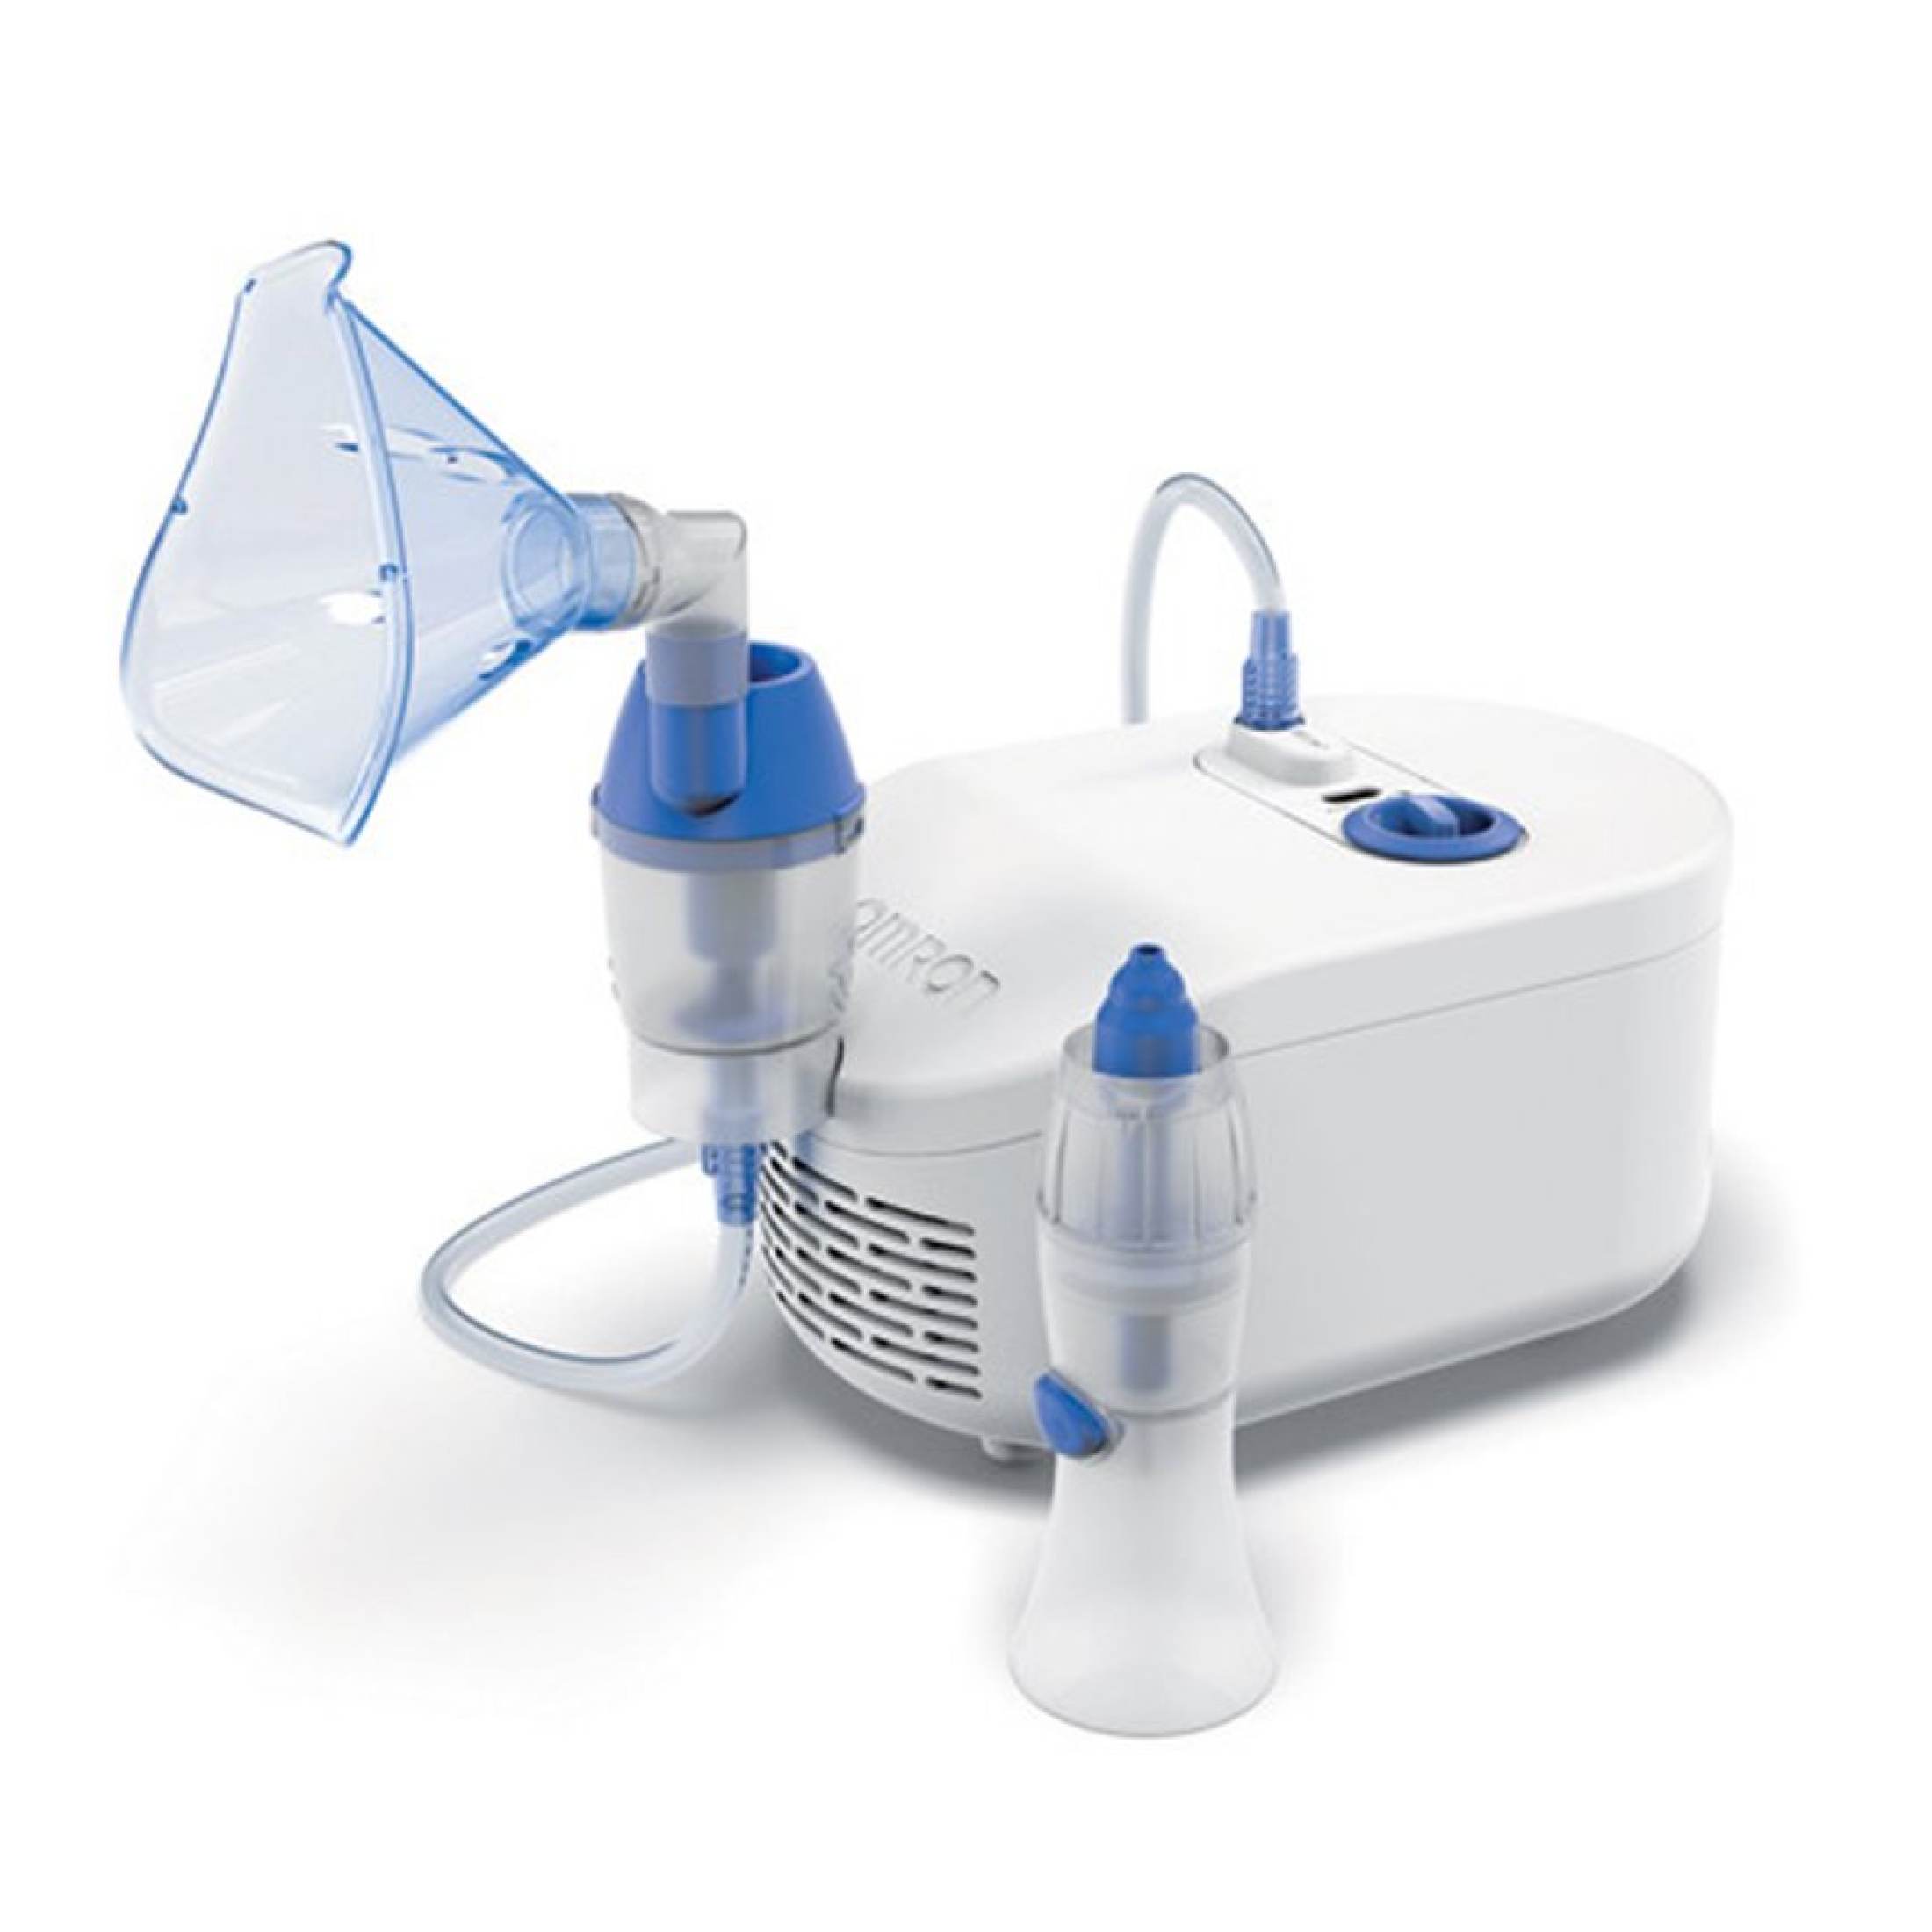 [ hàng chính hãng ] máy xông mũi họng omron ne-c101 hàng nhật bản - máy phun khí dung cho trẻ em và người lớn,hỗ trợ điều trị về đường hô hấp như viêm xoang,hen suyễn , bênh về phổi .trợ lý hô hấp đắc lực cho cả gia đình bạn 2